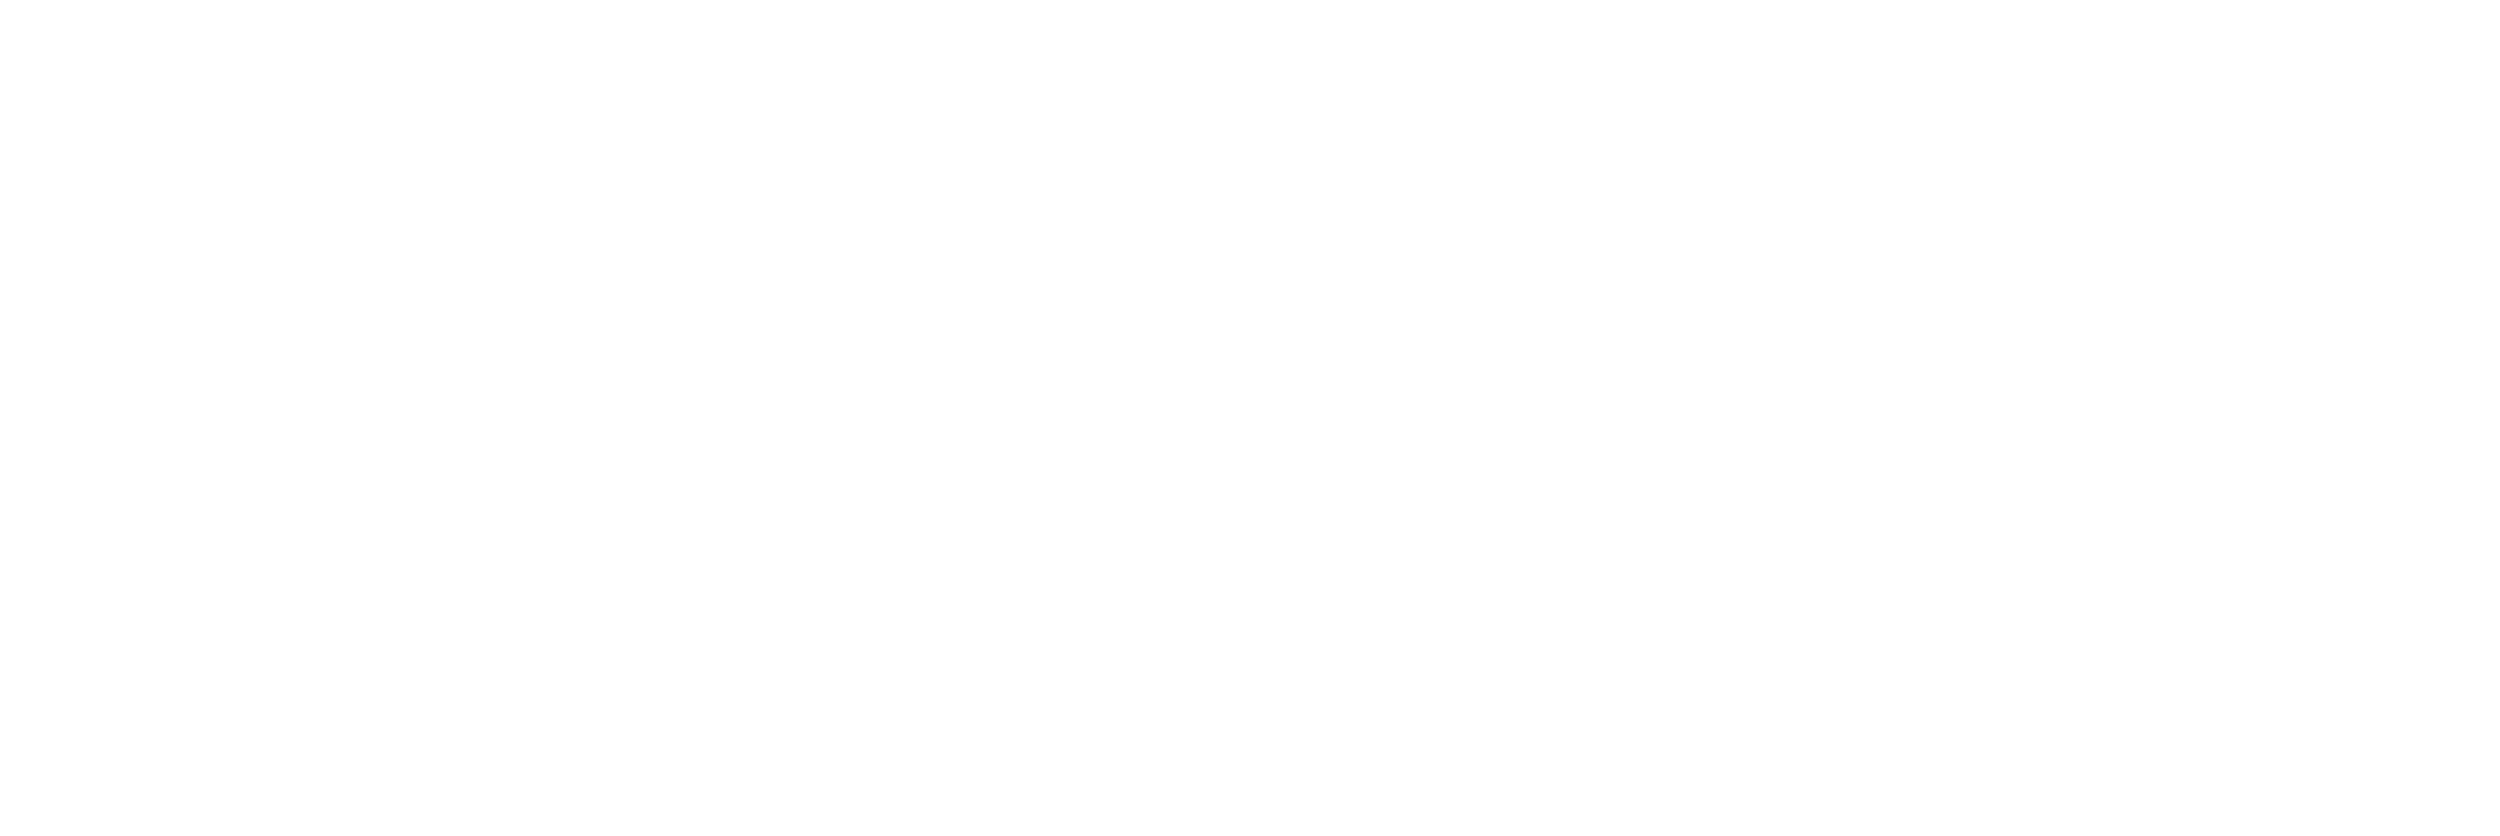 metro-logo-white.png